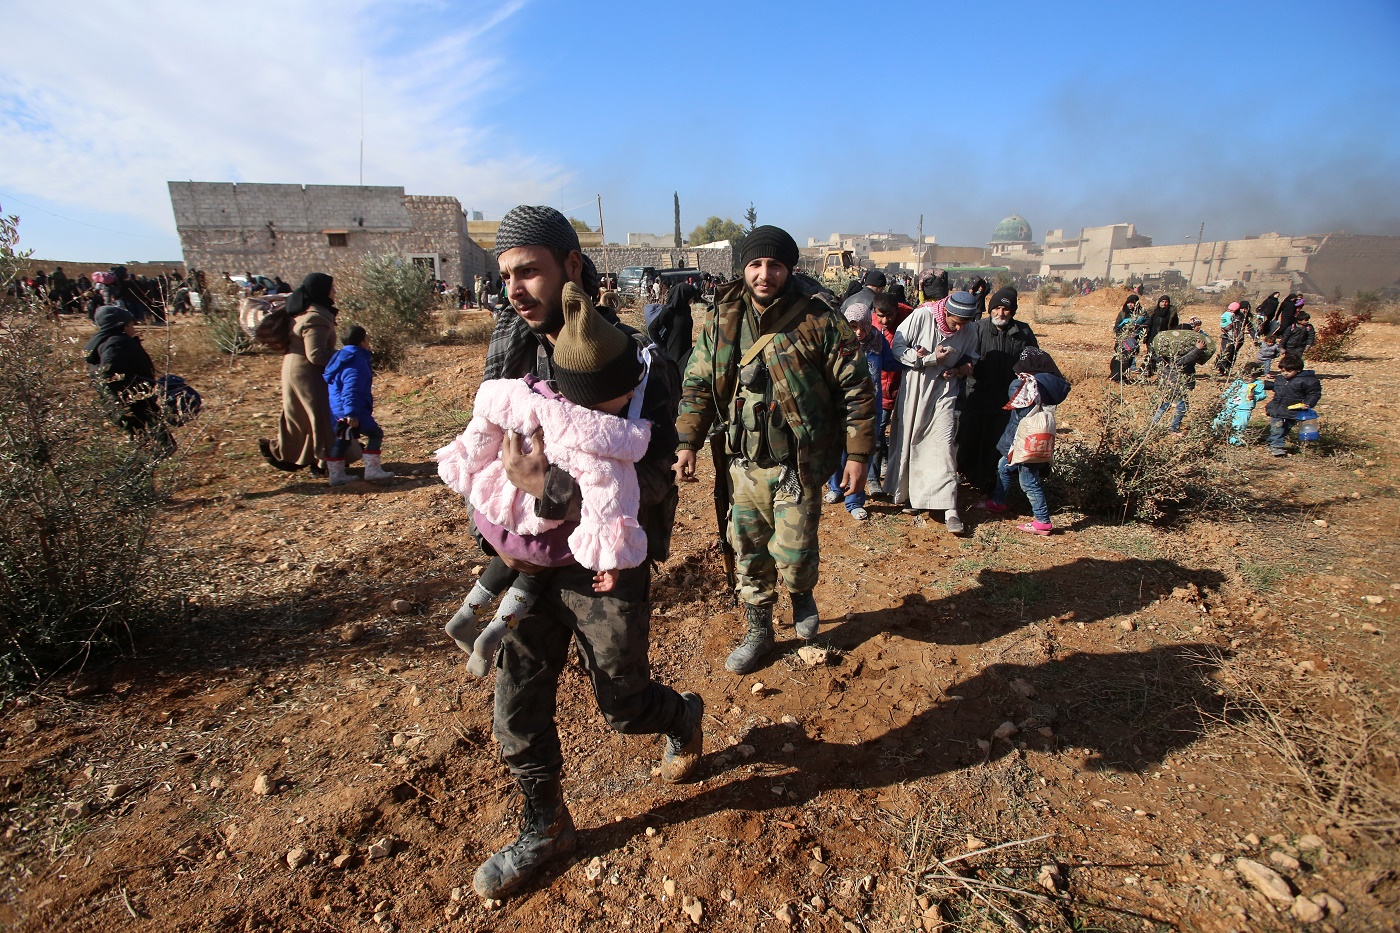 Miles de personas esperan por reanudación de evacuaciones en Siria